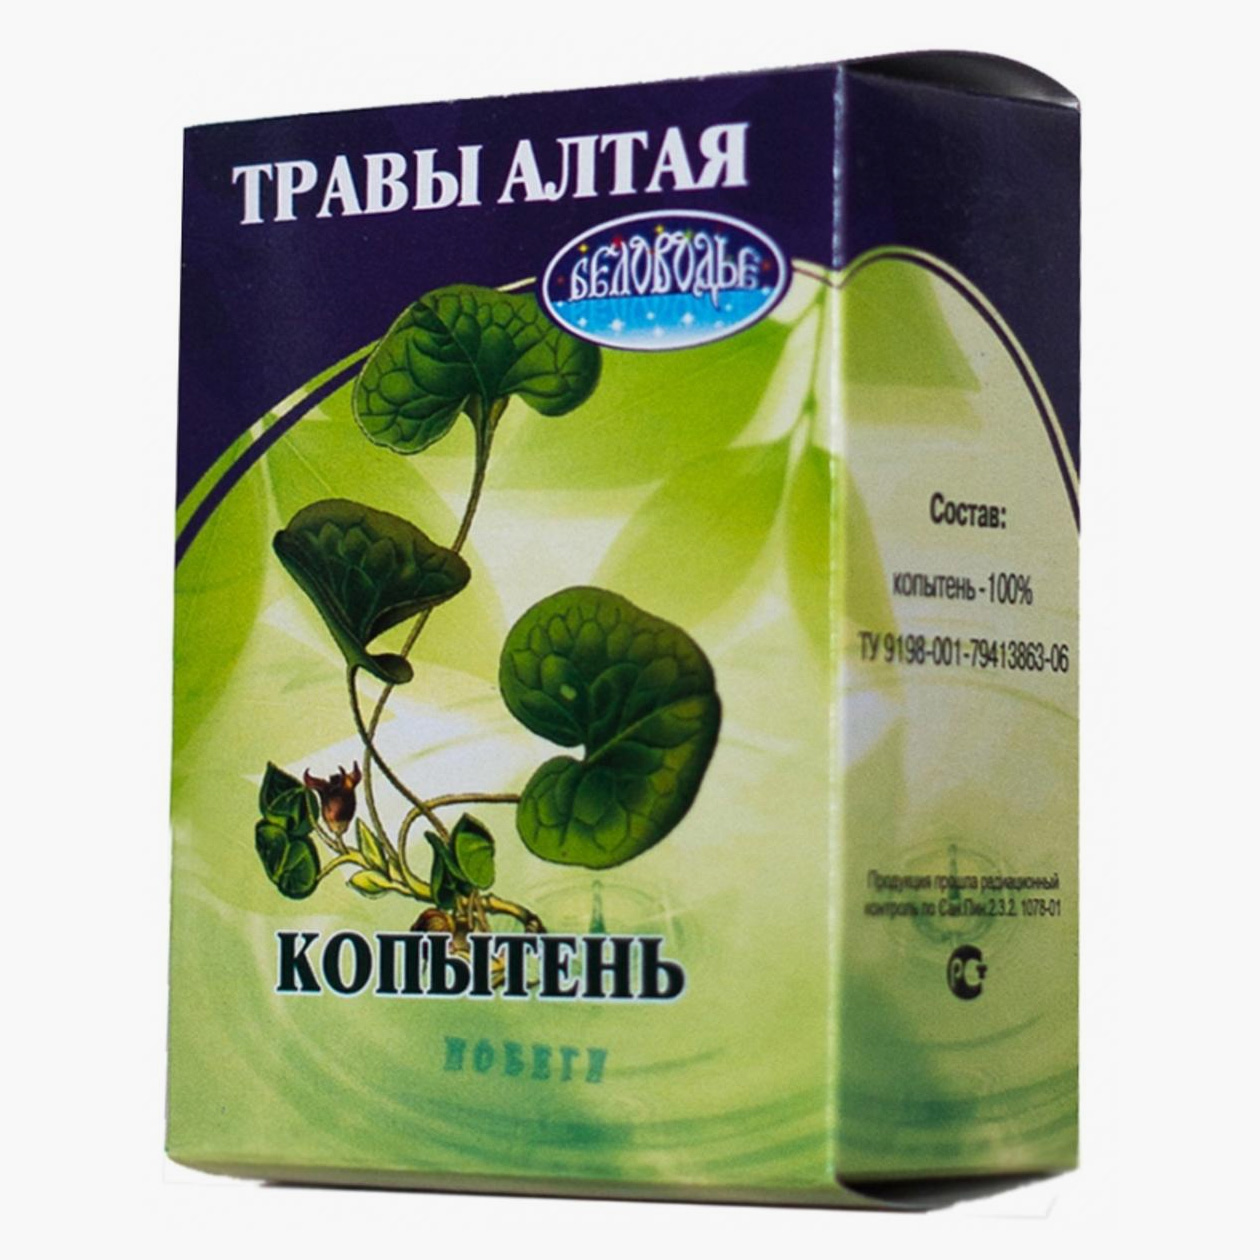 Добавки с копытнем обычно продаются в виде чаев, 50 г растительного чая можно купить примерно за 320⁠—⁠350 ₽